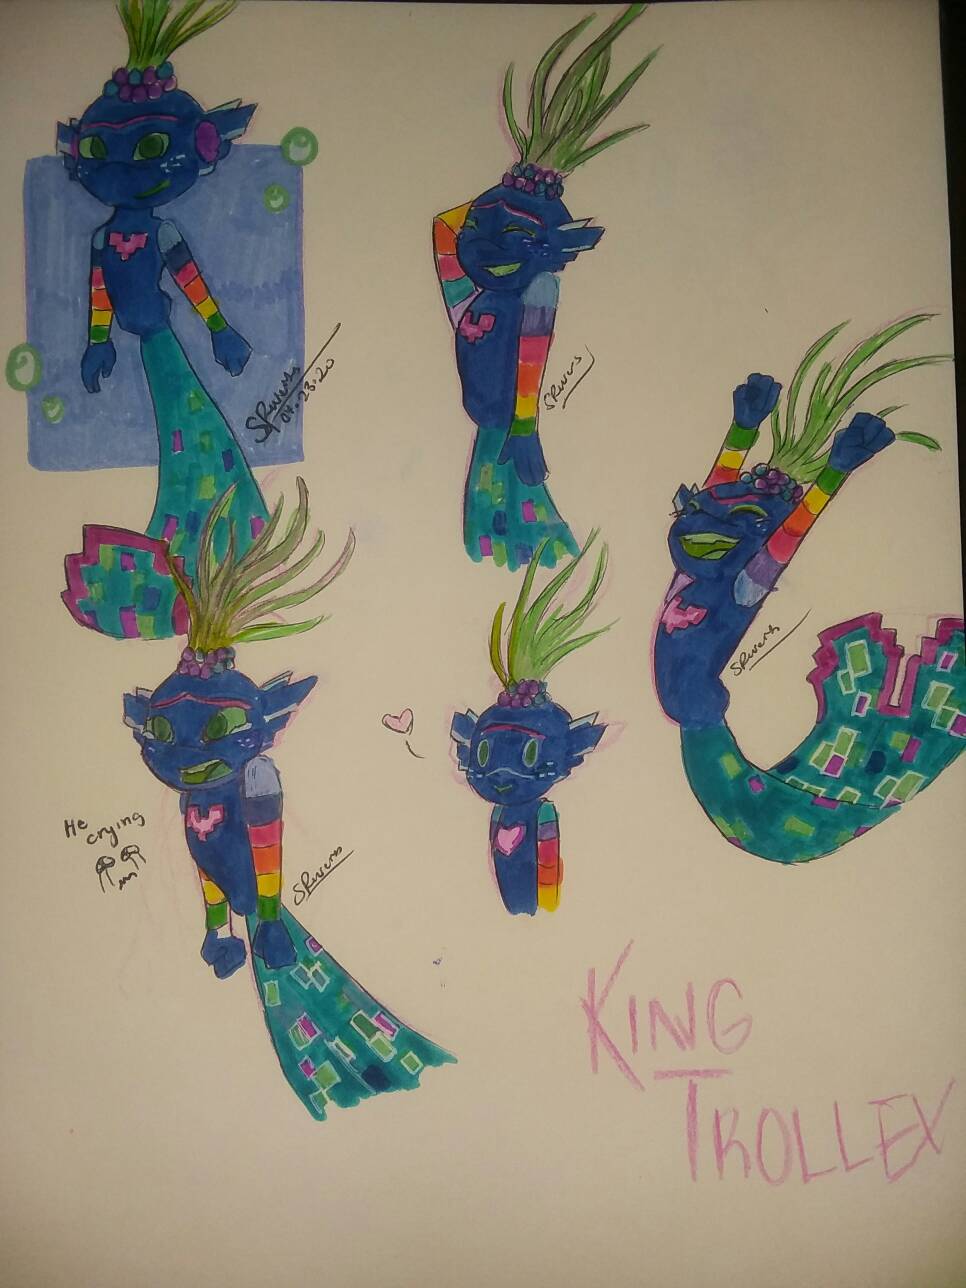 King Trollex Doodles By Raptorrivers